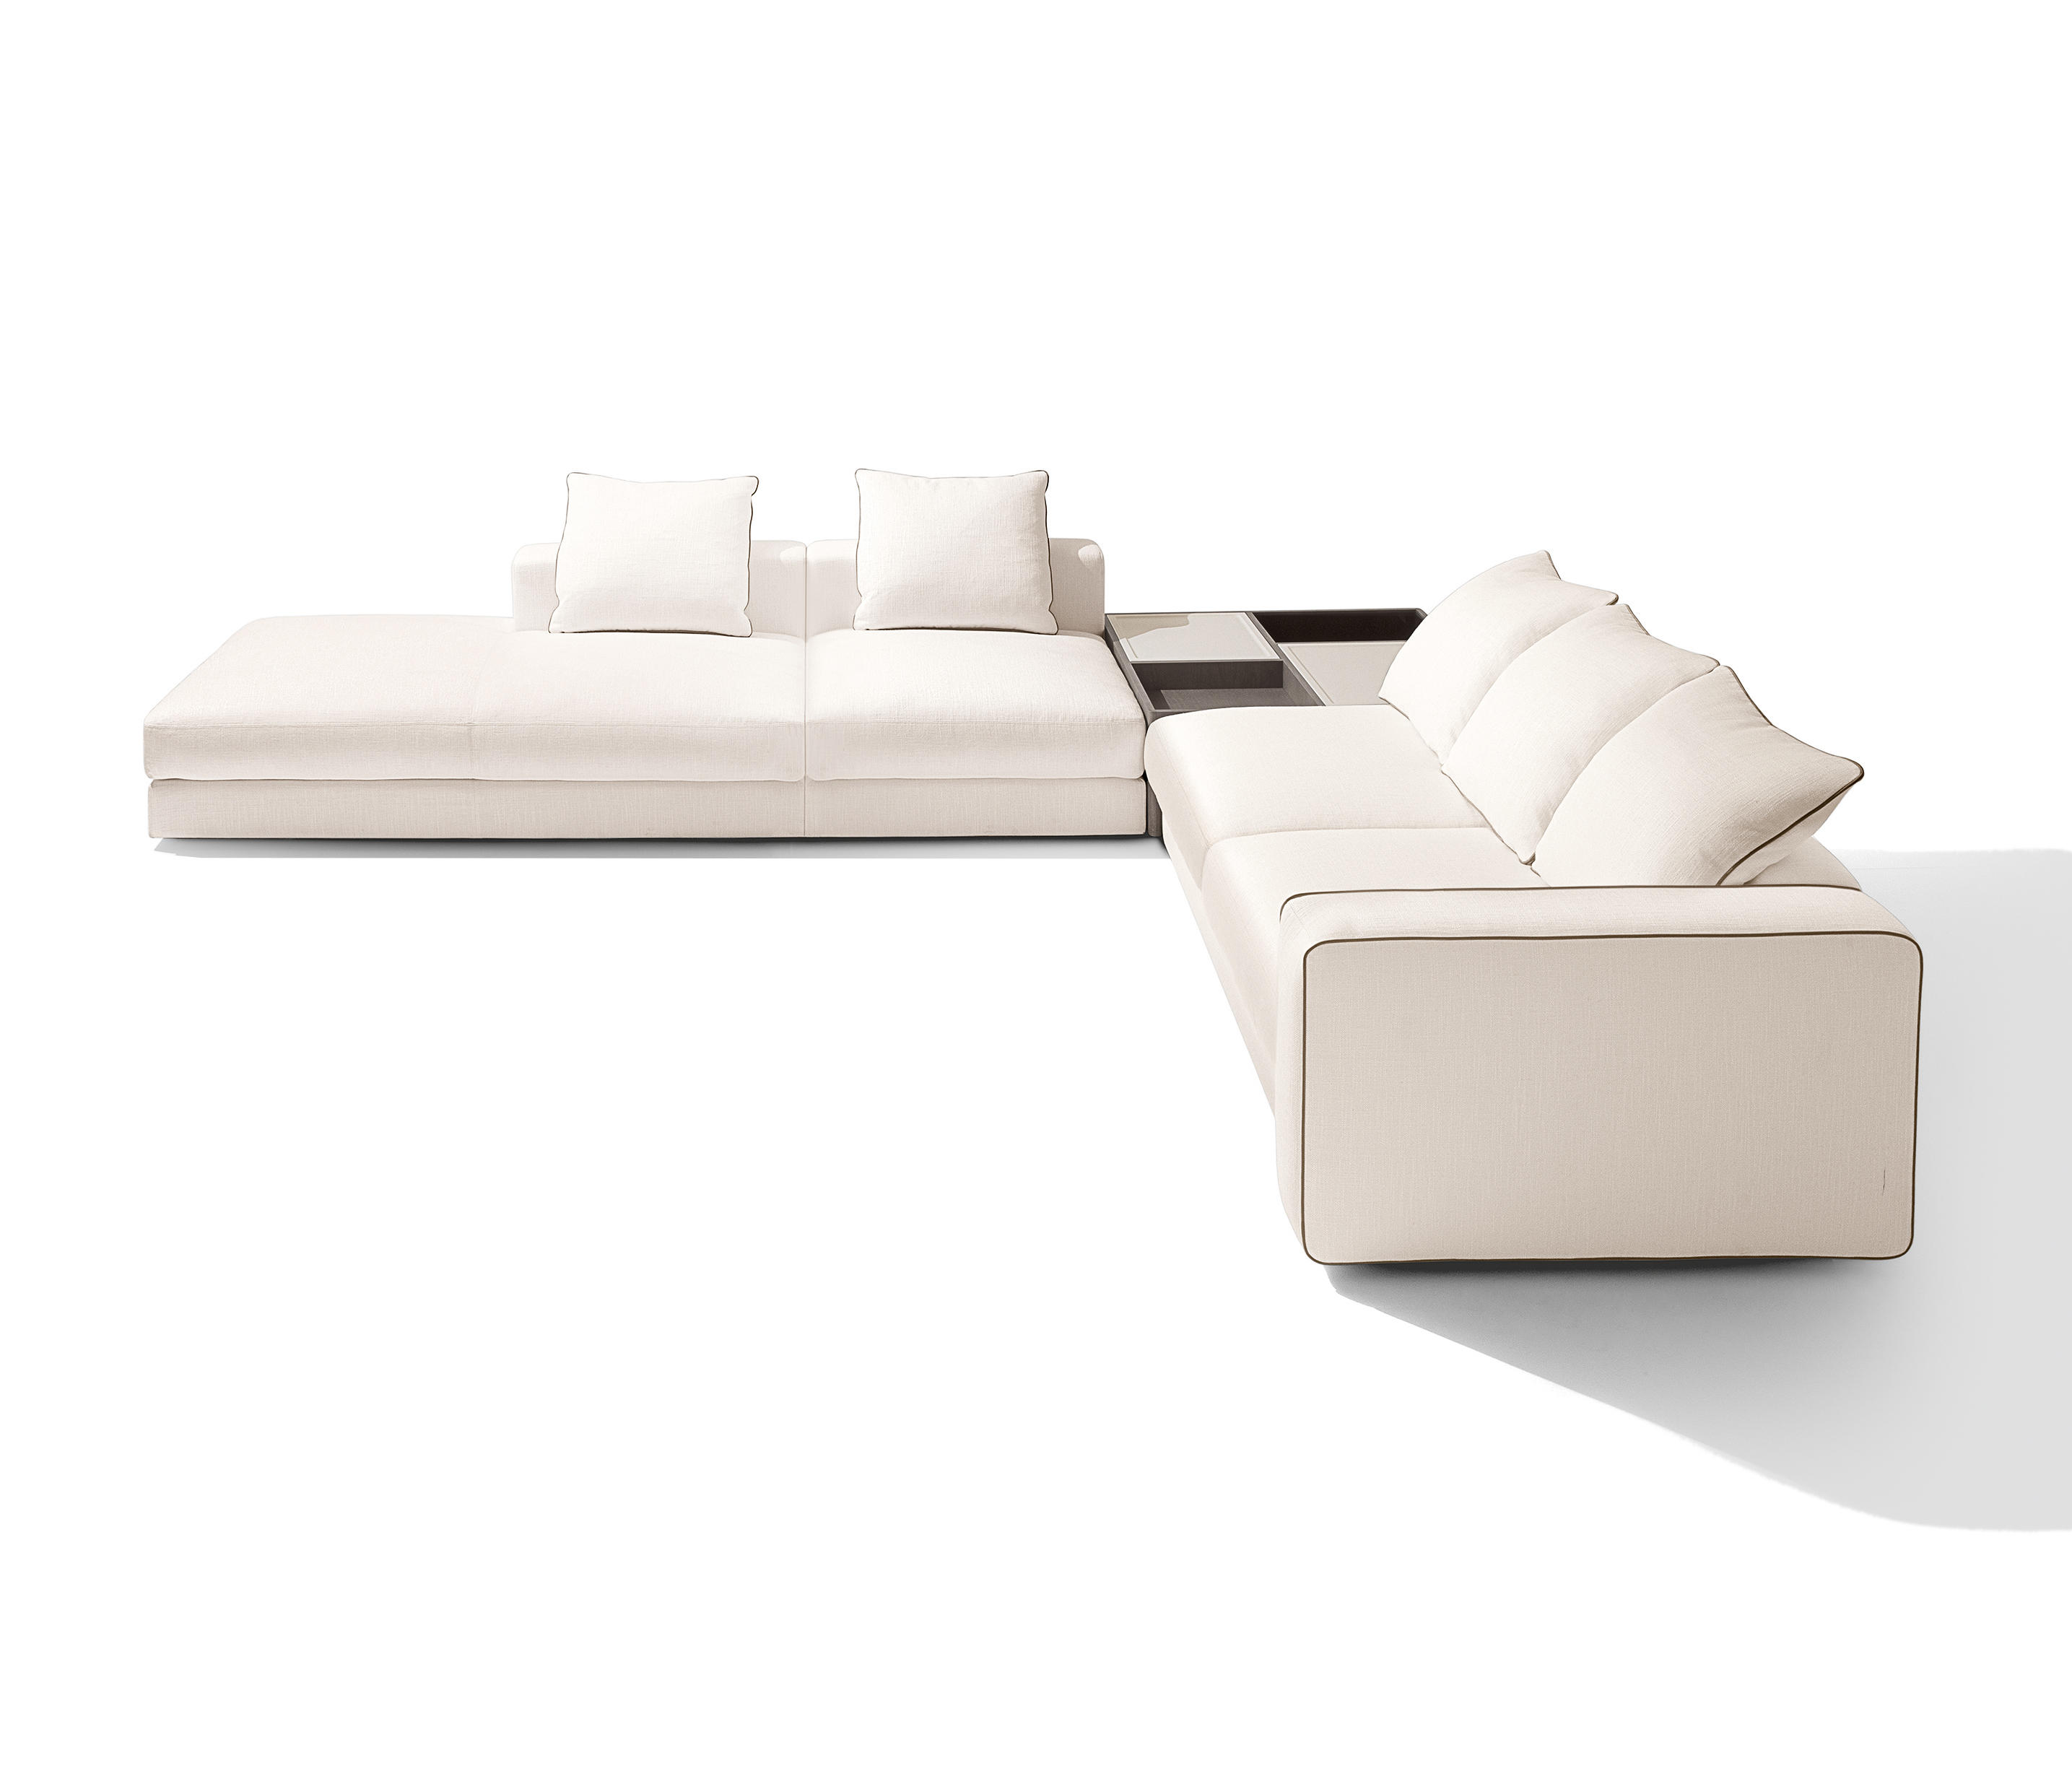 radical agrio Hacia abajo Skyline Sofa & muebles de diseño | Architonic